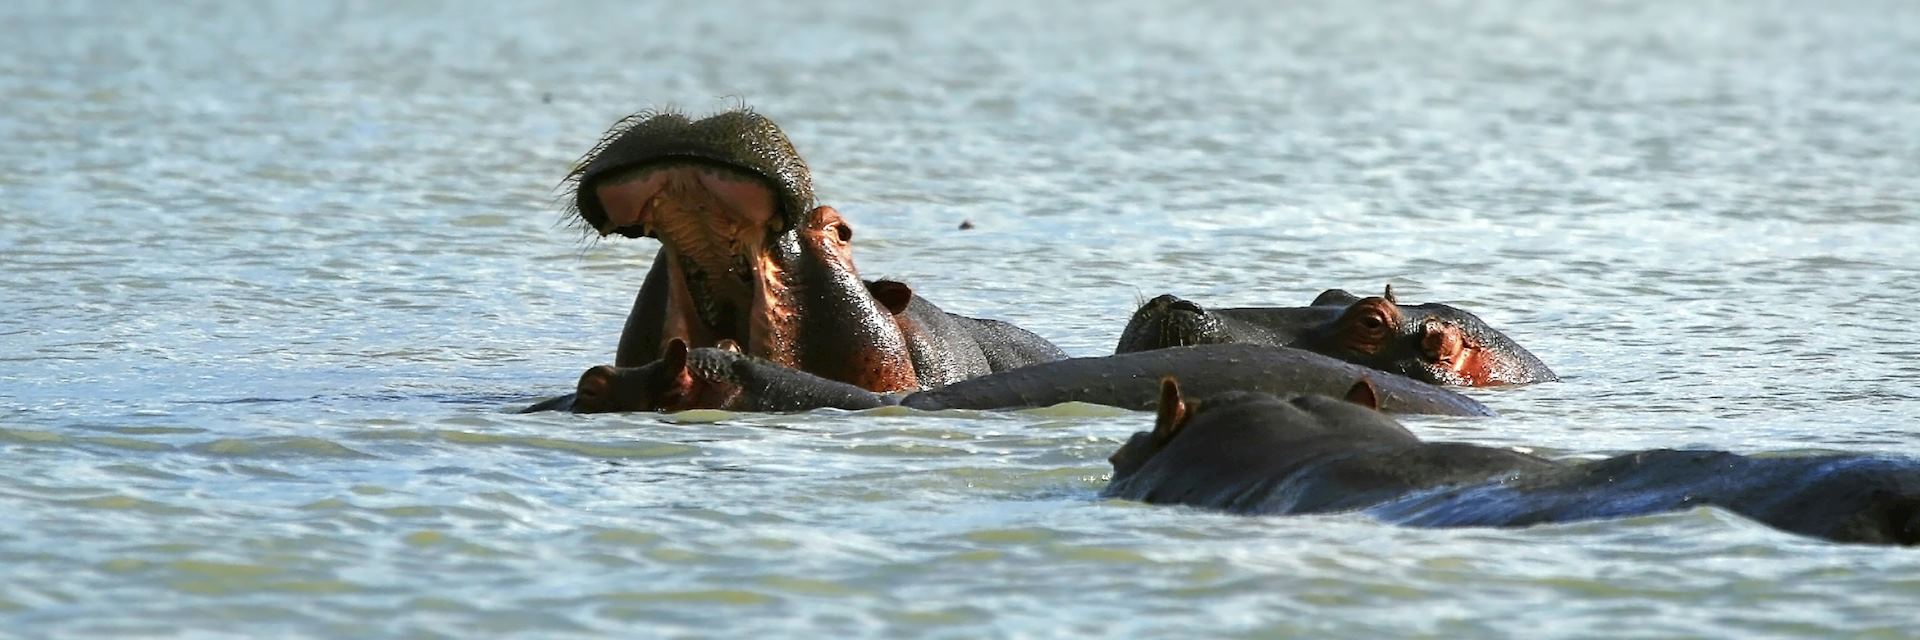 Hippo in Lake Naivasha, Kenya